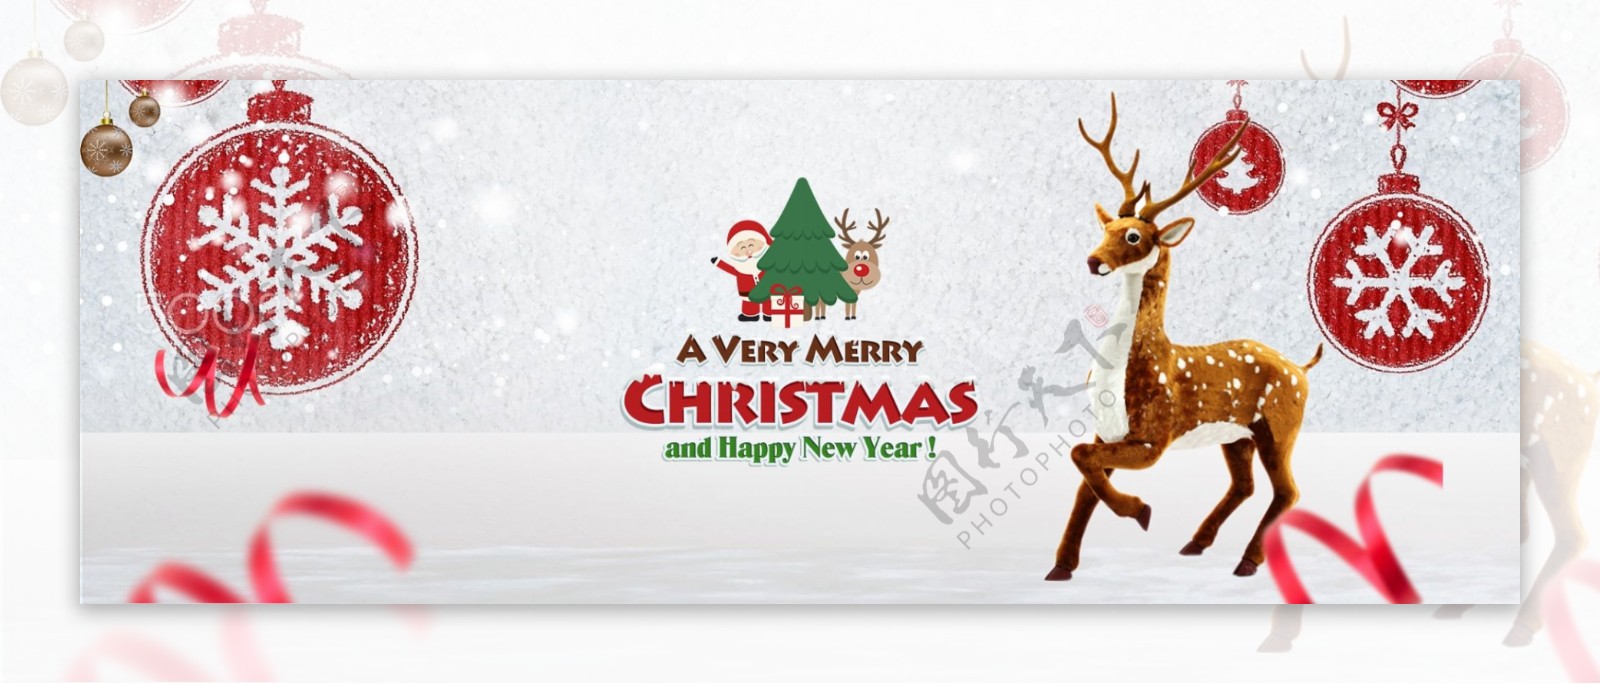 麋鹿雪景圣诞狂购淘宝圣诞狂欢购圣诞节海报